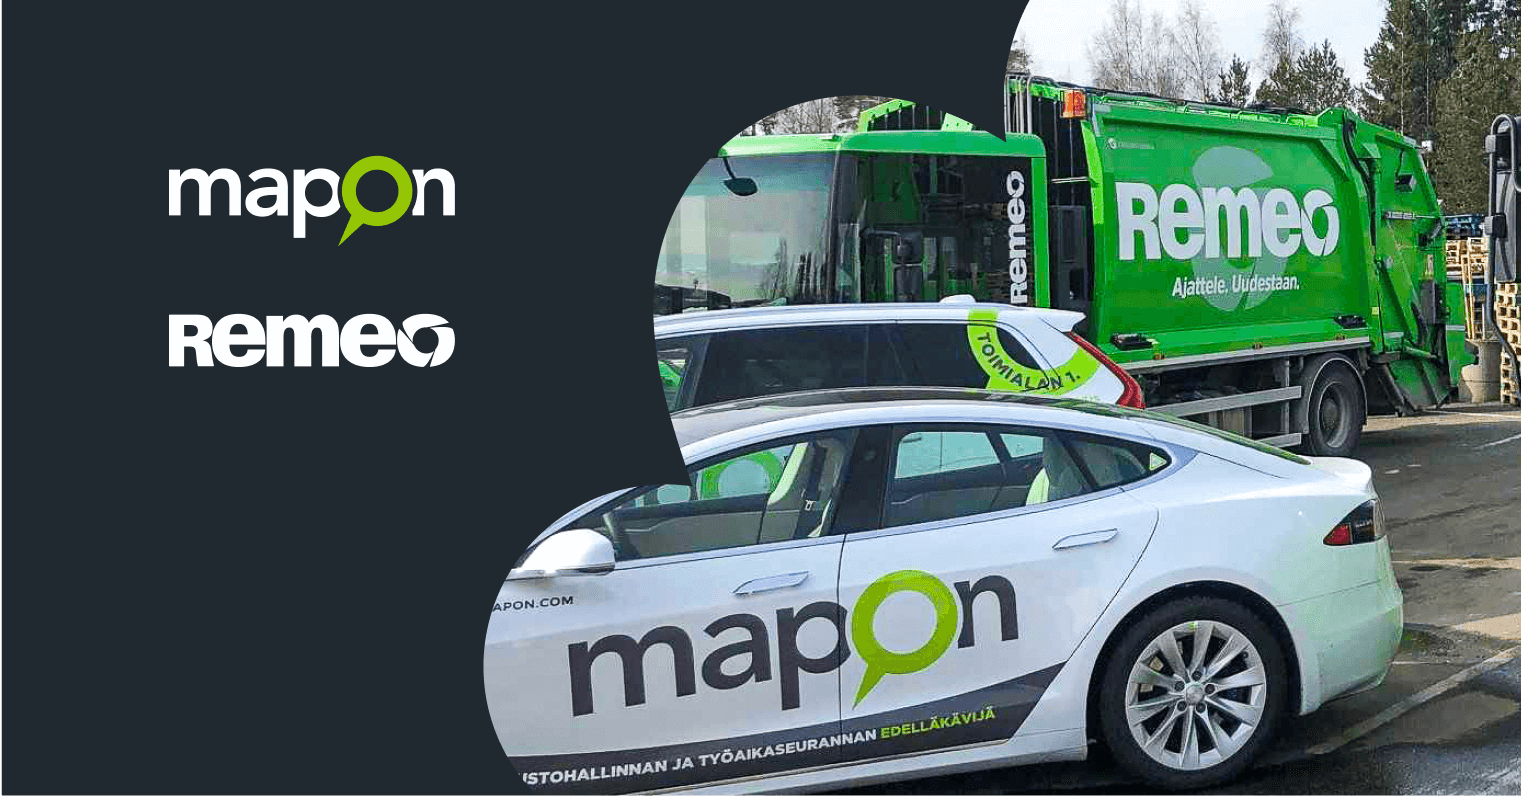 Mapon x Remeo blogi - dataohjautuva toiminnan optimointi ja ajotapaseuranta tuovat säästöjä. Kuvassa Mapon ja Remeo logo ja Remeon ja Maponin ajoneuvot.